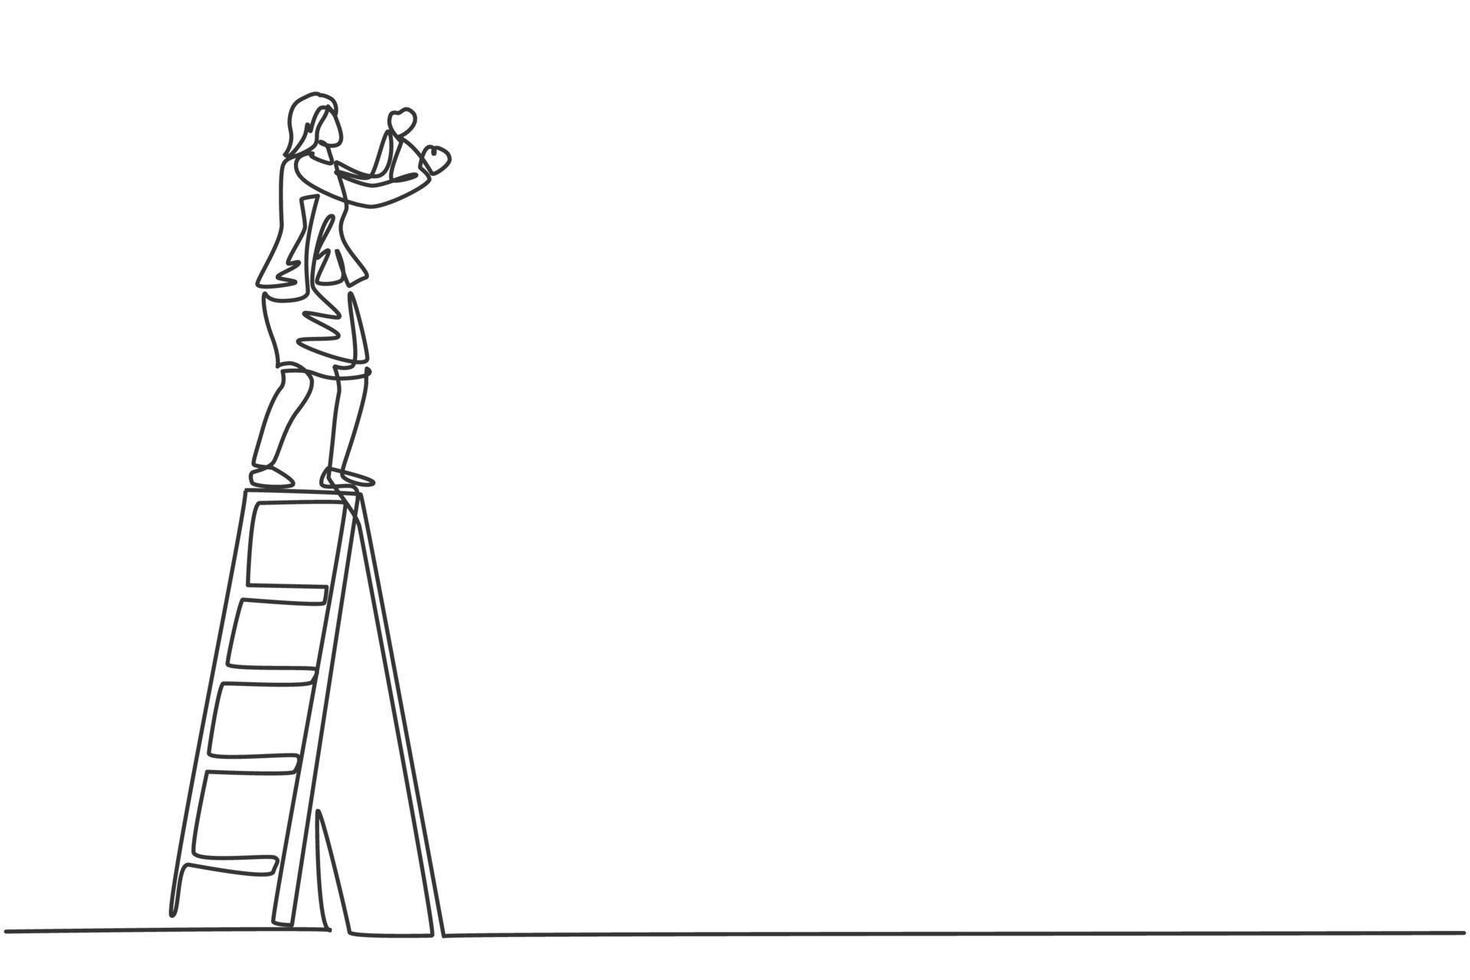 único desenho de linha contínua do jovem gerente feminino subir escada para consertar a lâmpada no escritório. mulher de negócios profissional. conceito minimalismo dinâmico uma linha desenhar ilustração vetorial de design gráfico vetor